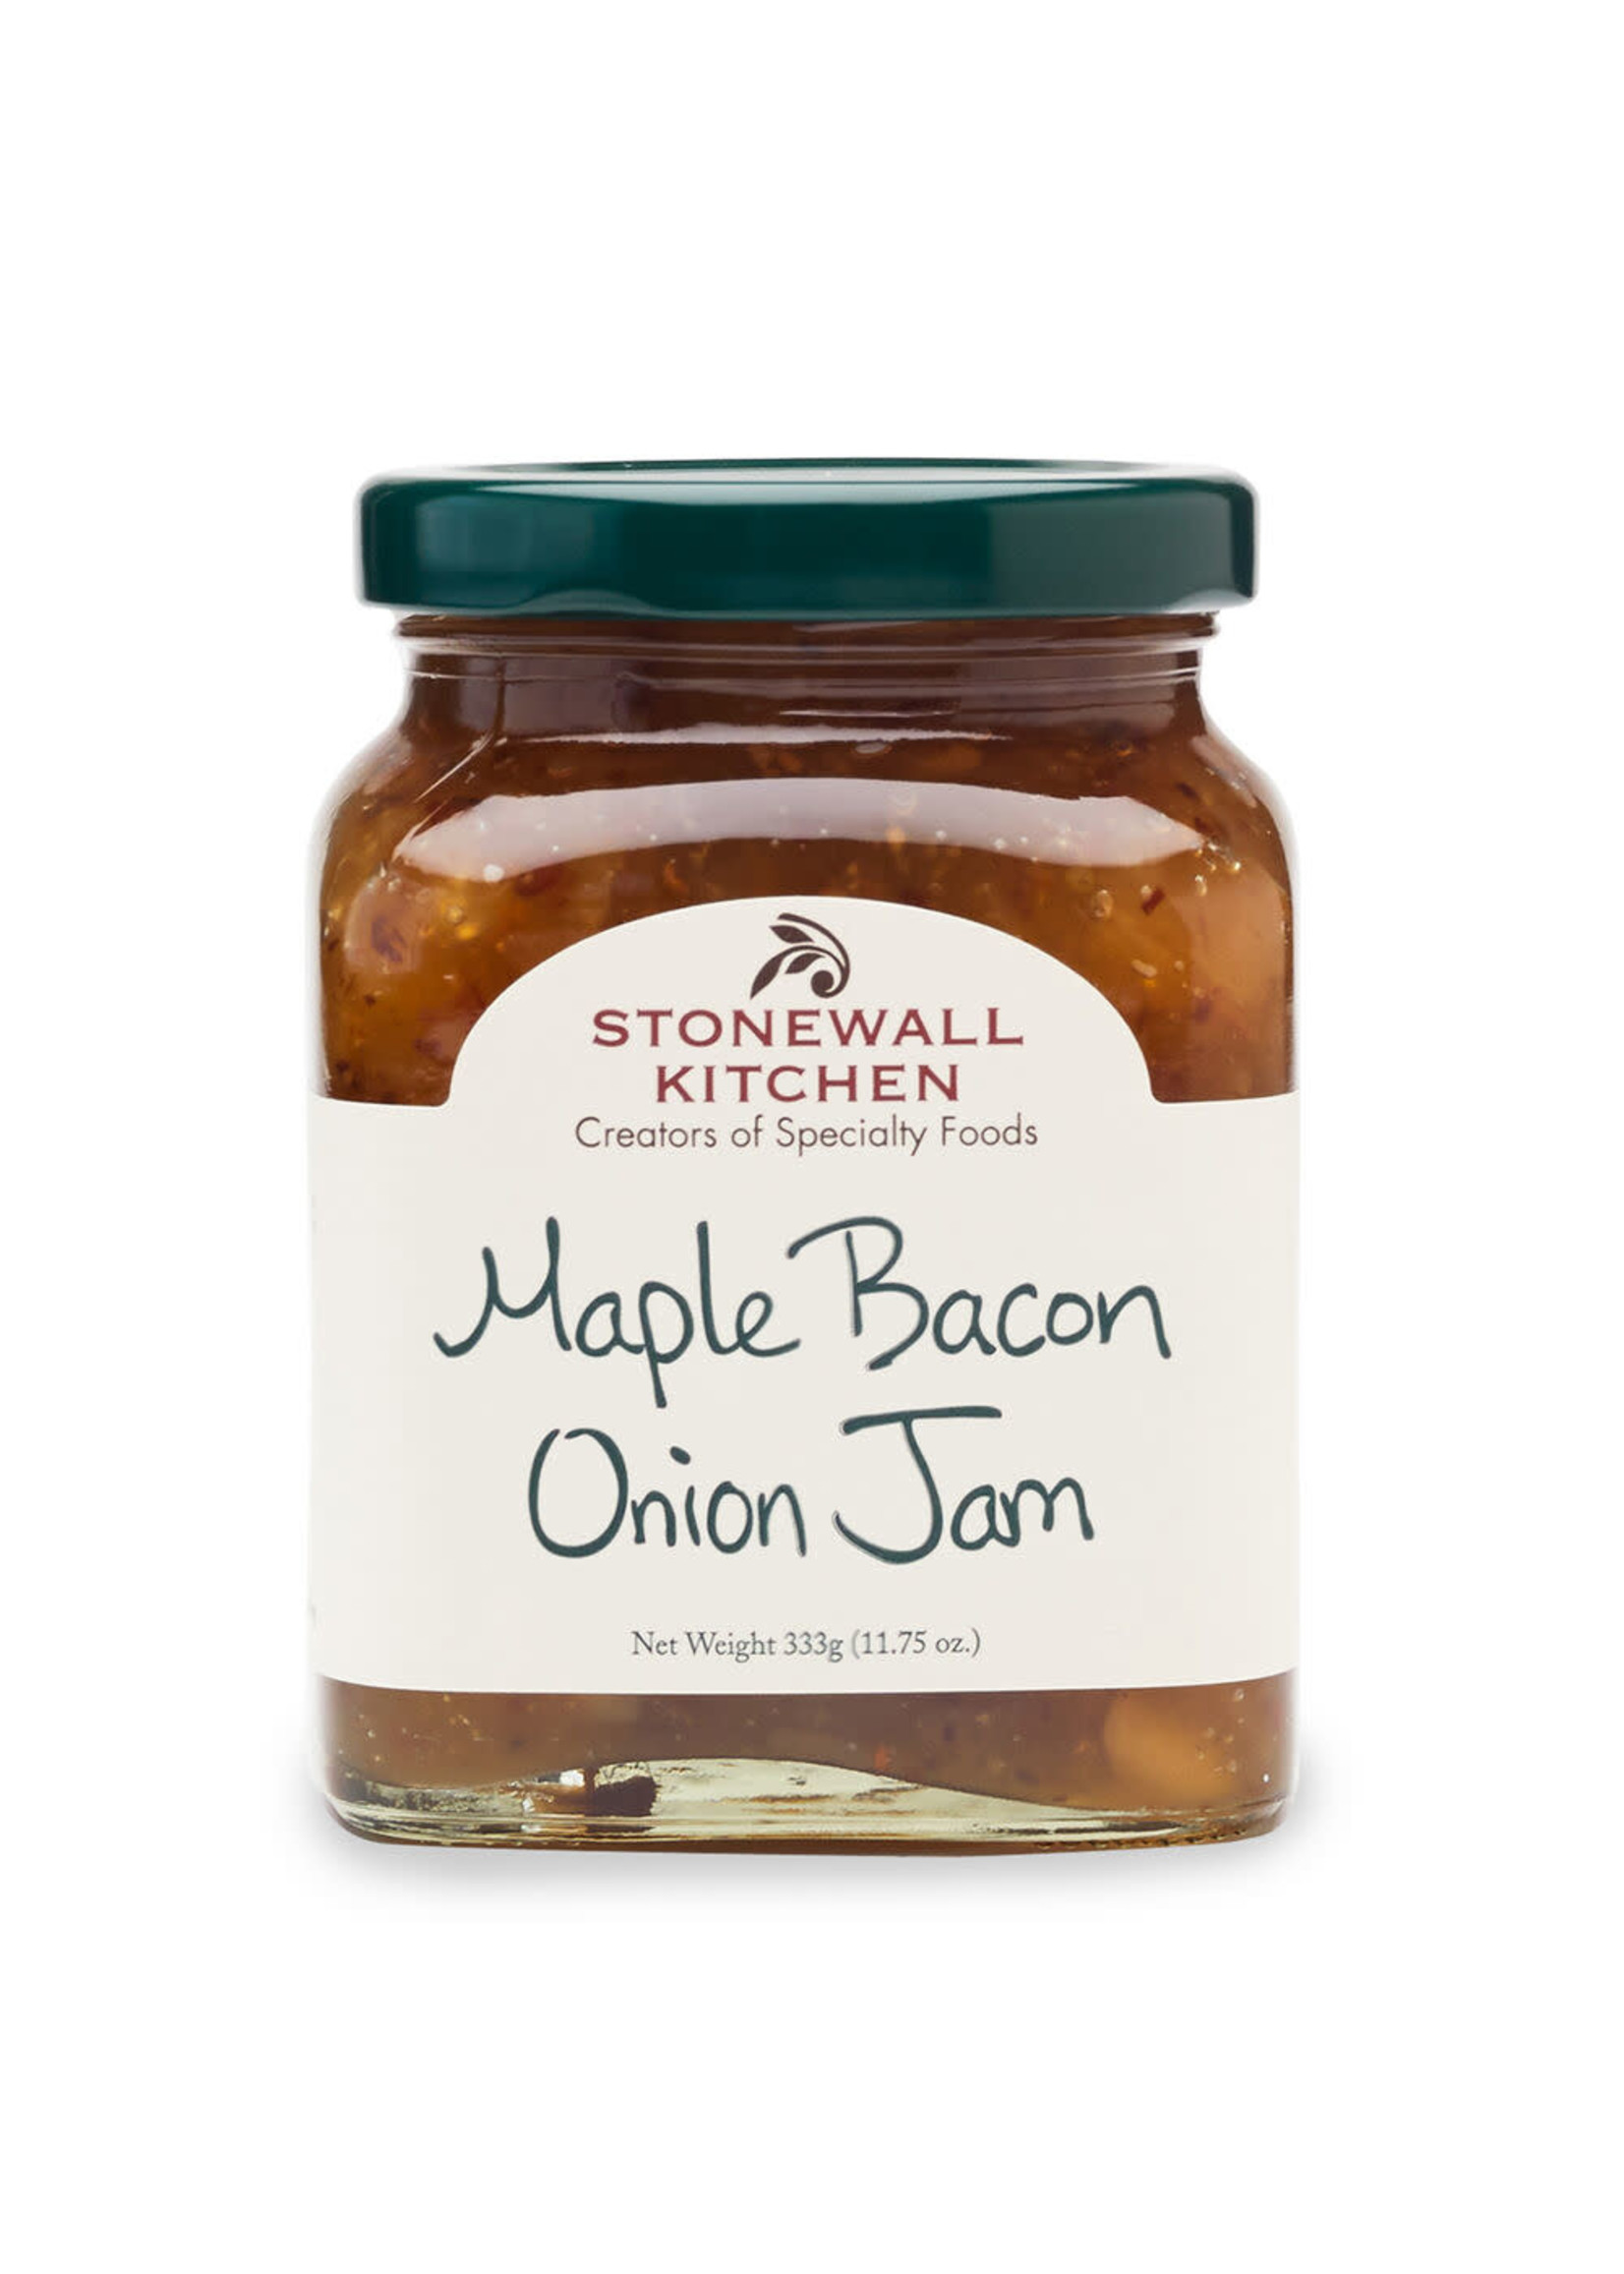 Stonewall Kitchens Maple Bacon Onion Jam